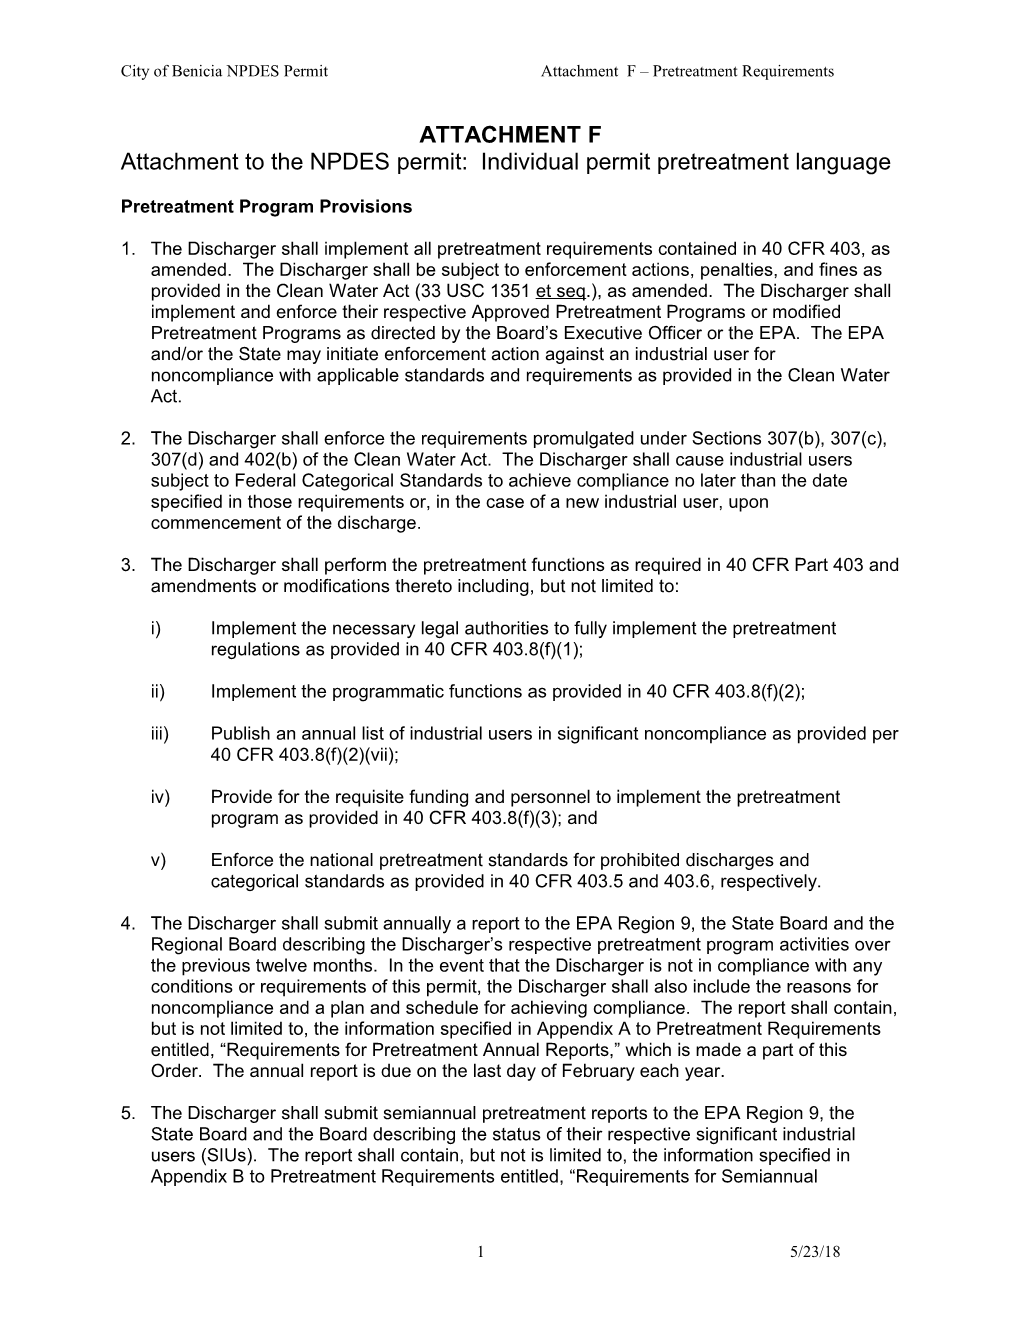 City of Benicia NPDES Permit Attachment F Pretreatment Requirements